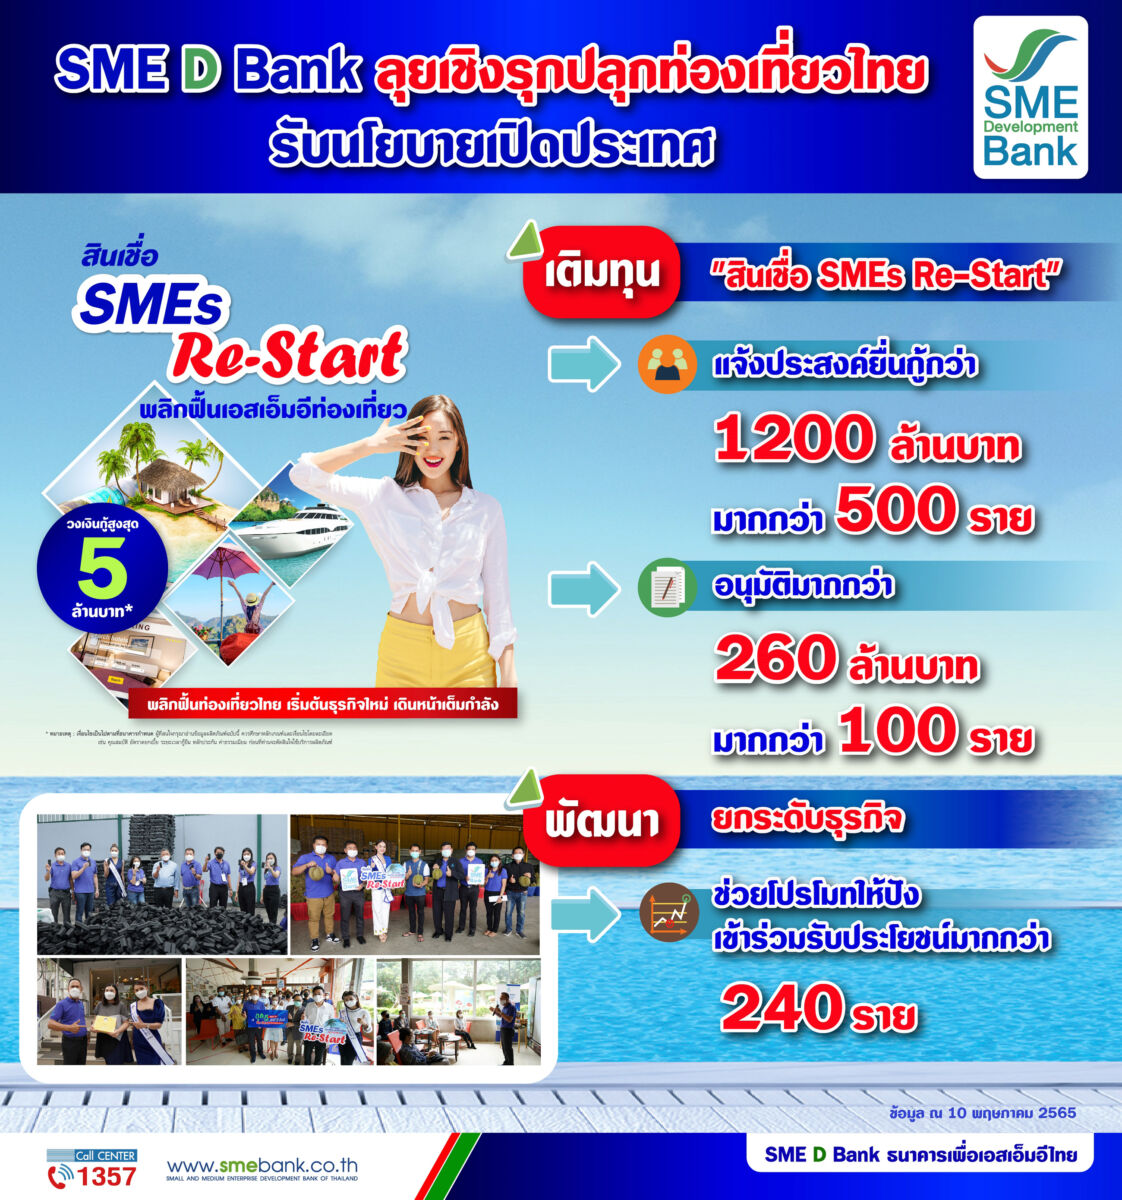 SME D Bank สินเชื่อ SMEs Re-Start